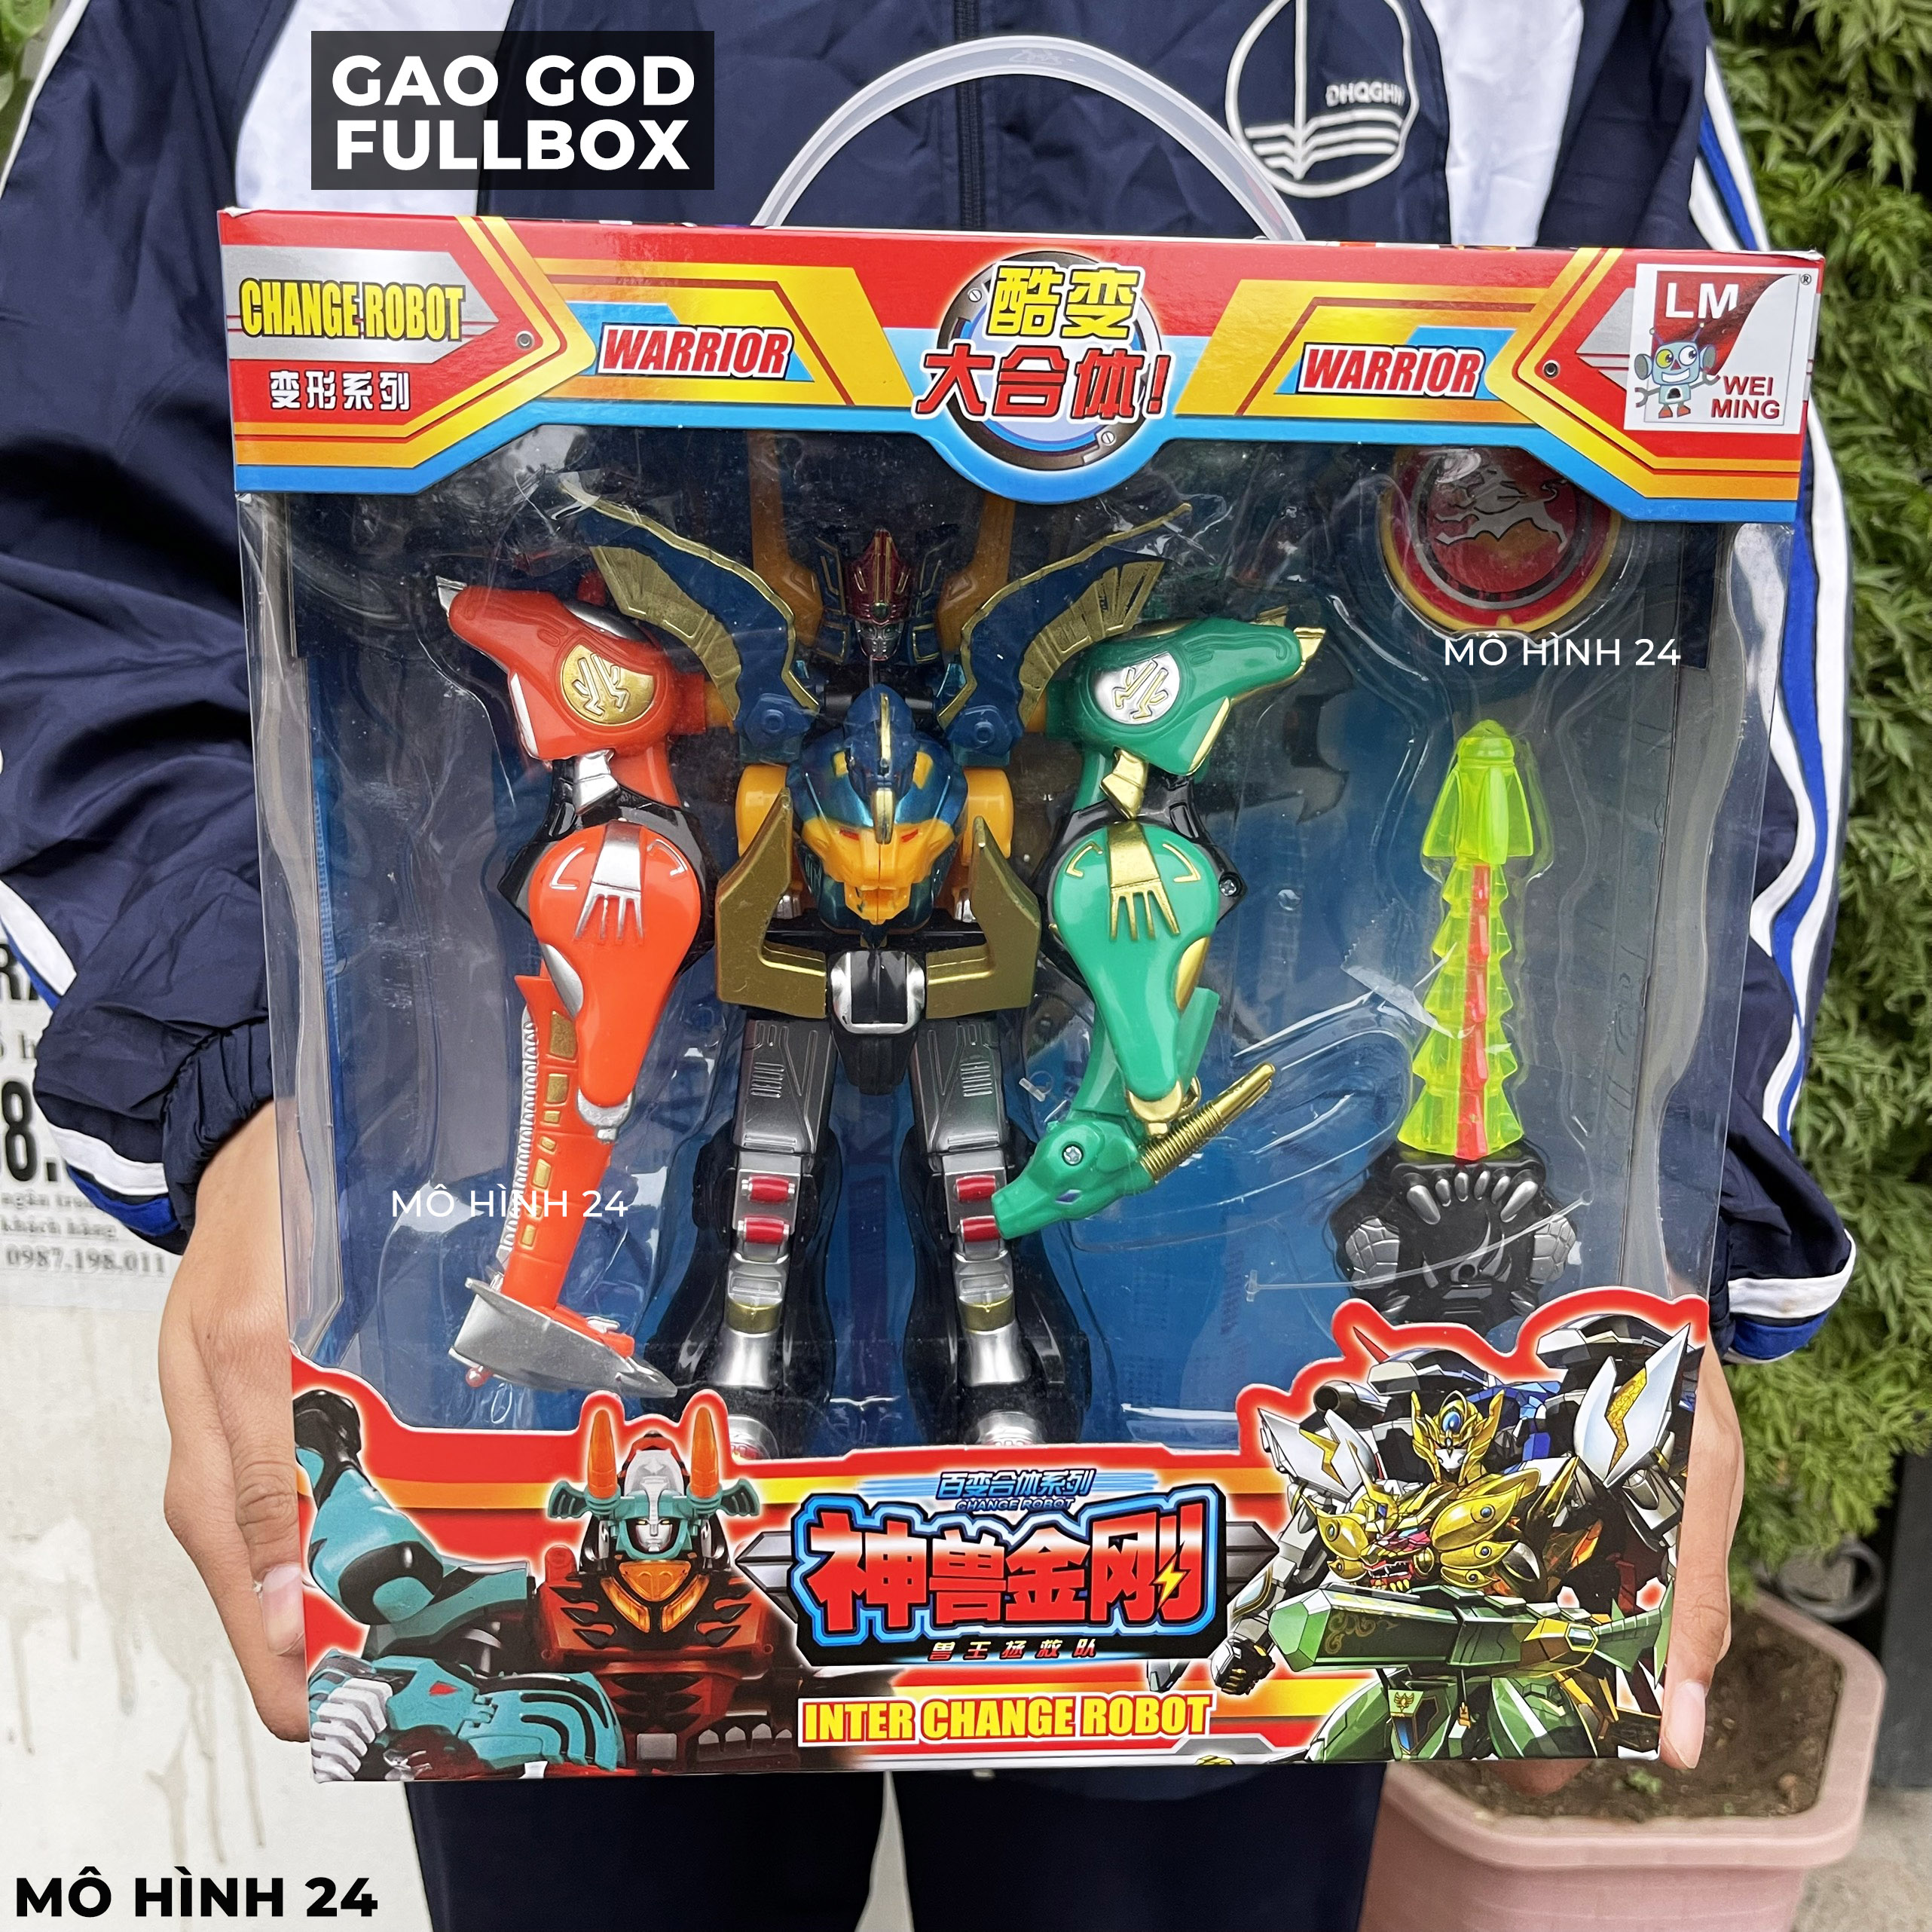 Hộp lắp ráp siêu nhân Gao God chúa gaoranger gao ranger biến hình full robot đồ chơi giá rẻ super Trung Quốc TQ dx